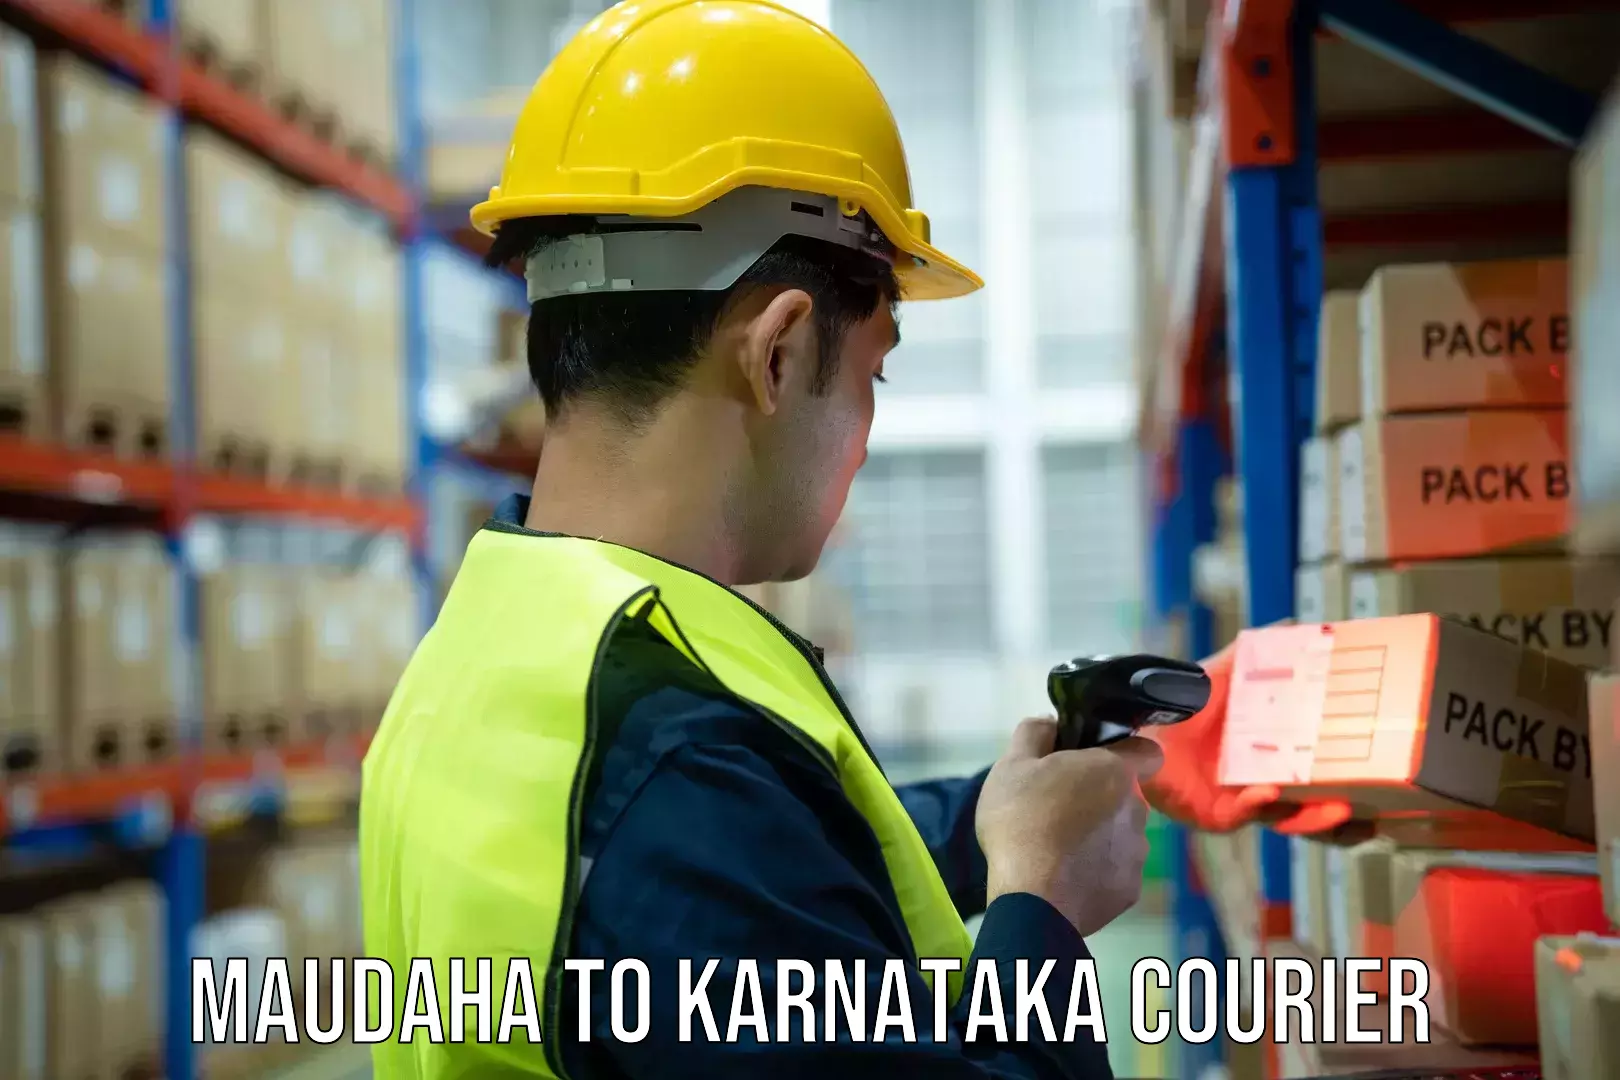 Advanced delivery network Maudaha to Karnataka